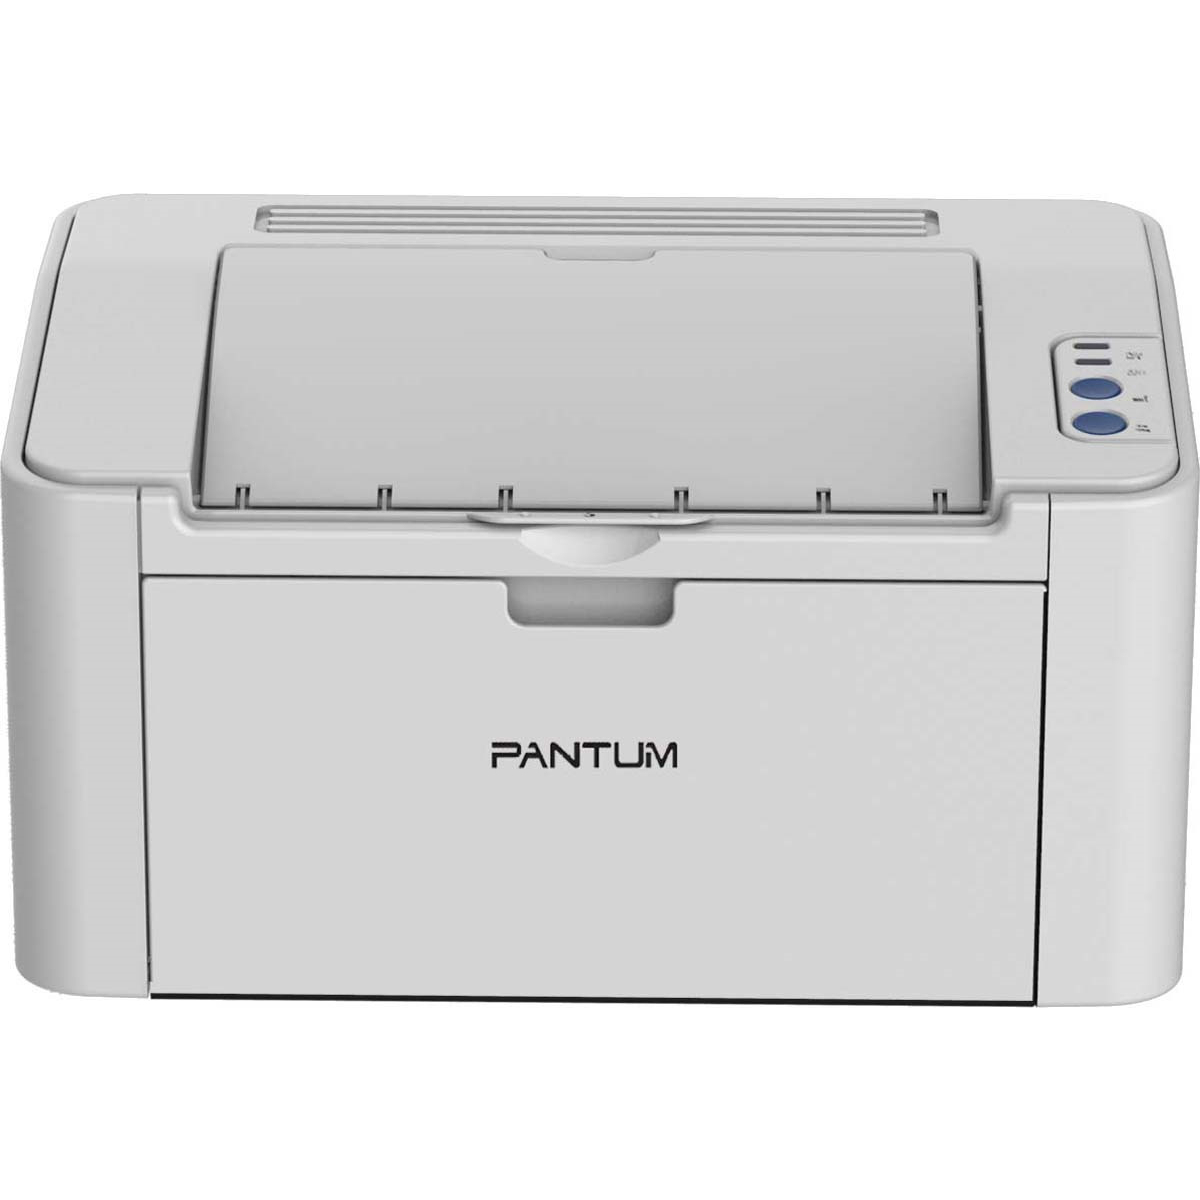 Принтер p2200 series. Принтер Pantum p2200. Принтер лазерный Pantum p2200. Pantum p2516. Pantum p2518.